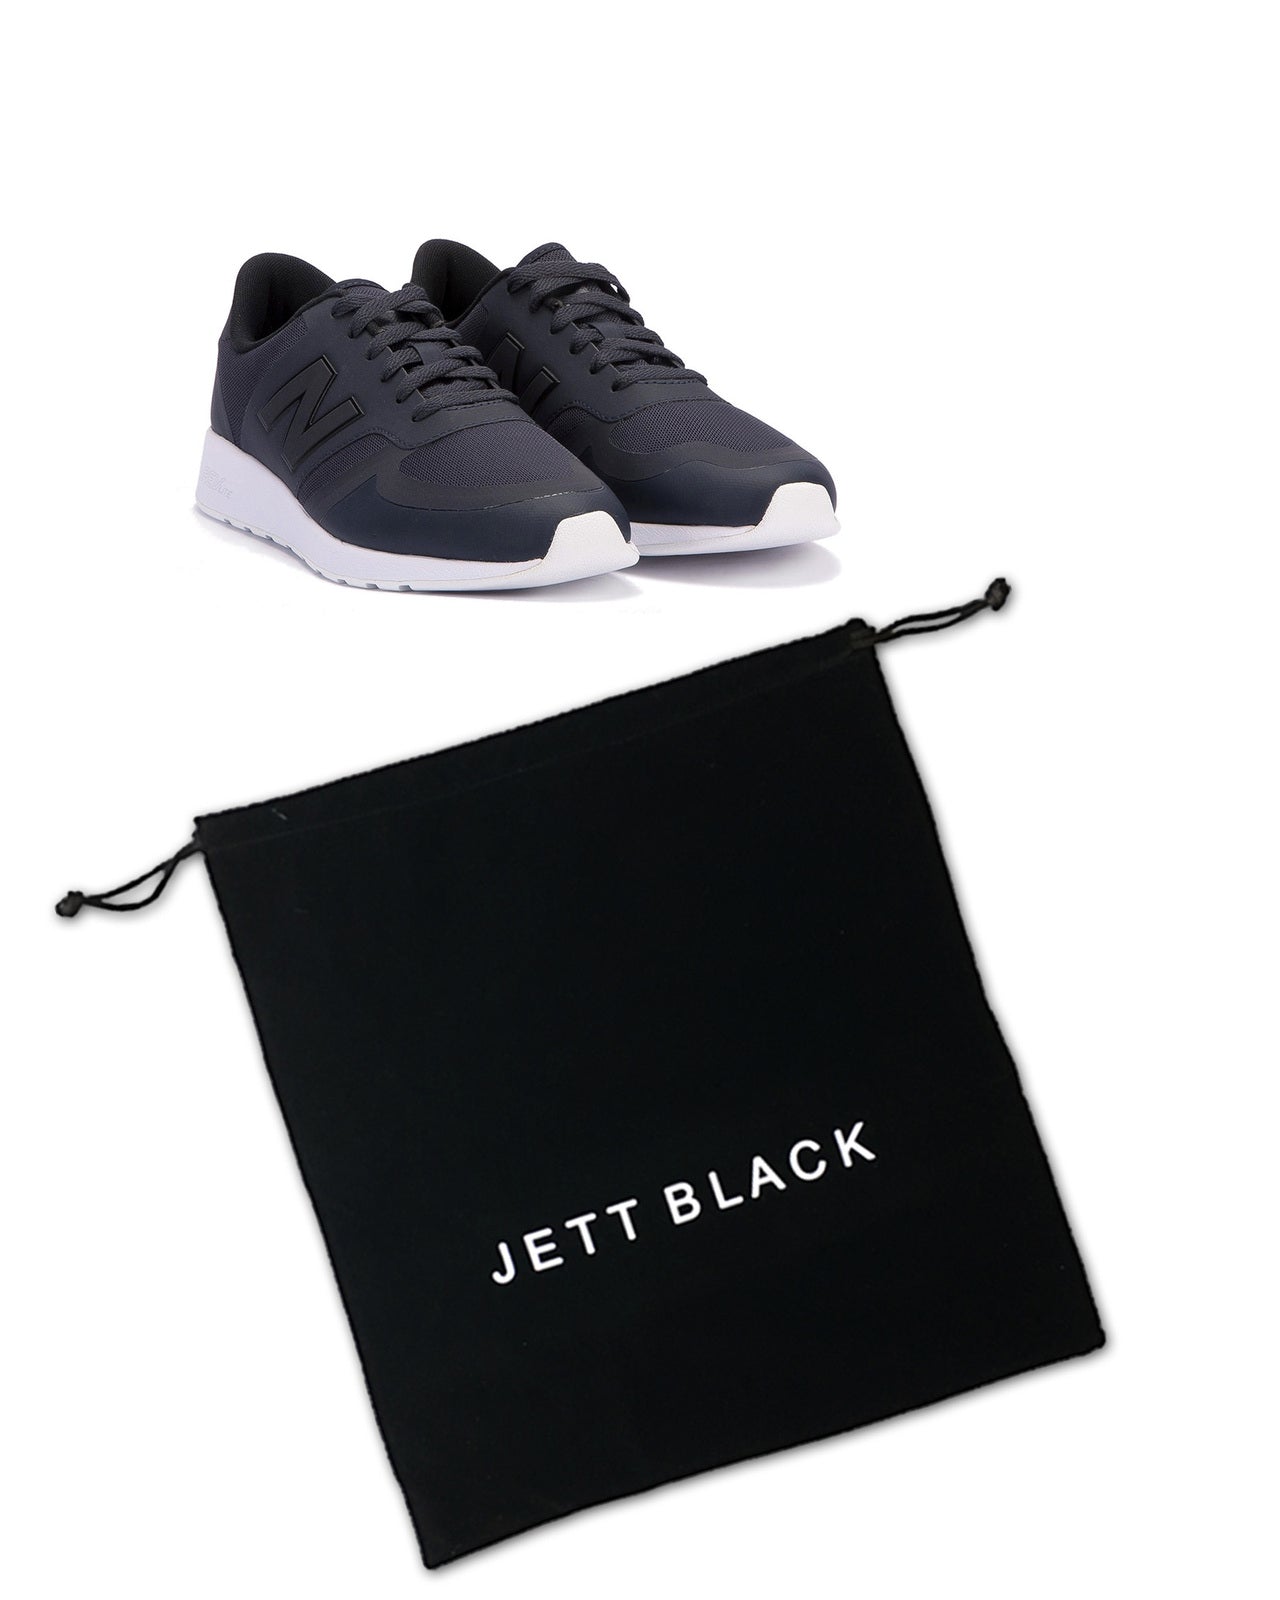 Jett Black Shoe Pouch - 4 Pack